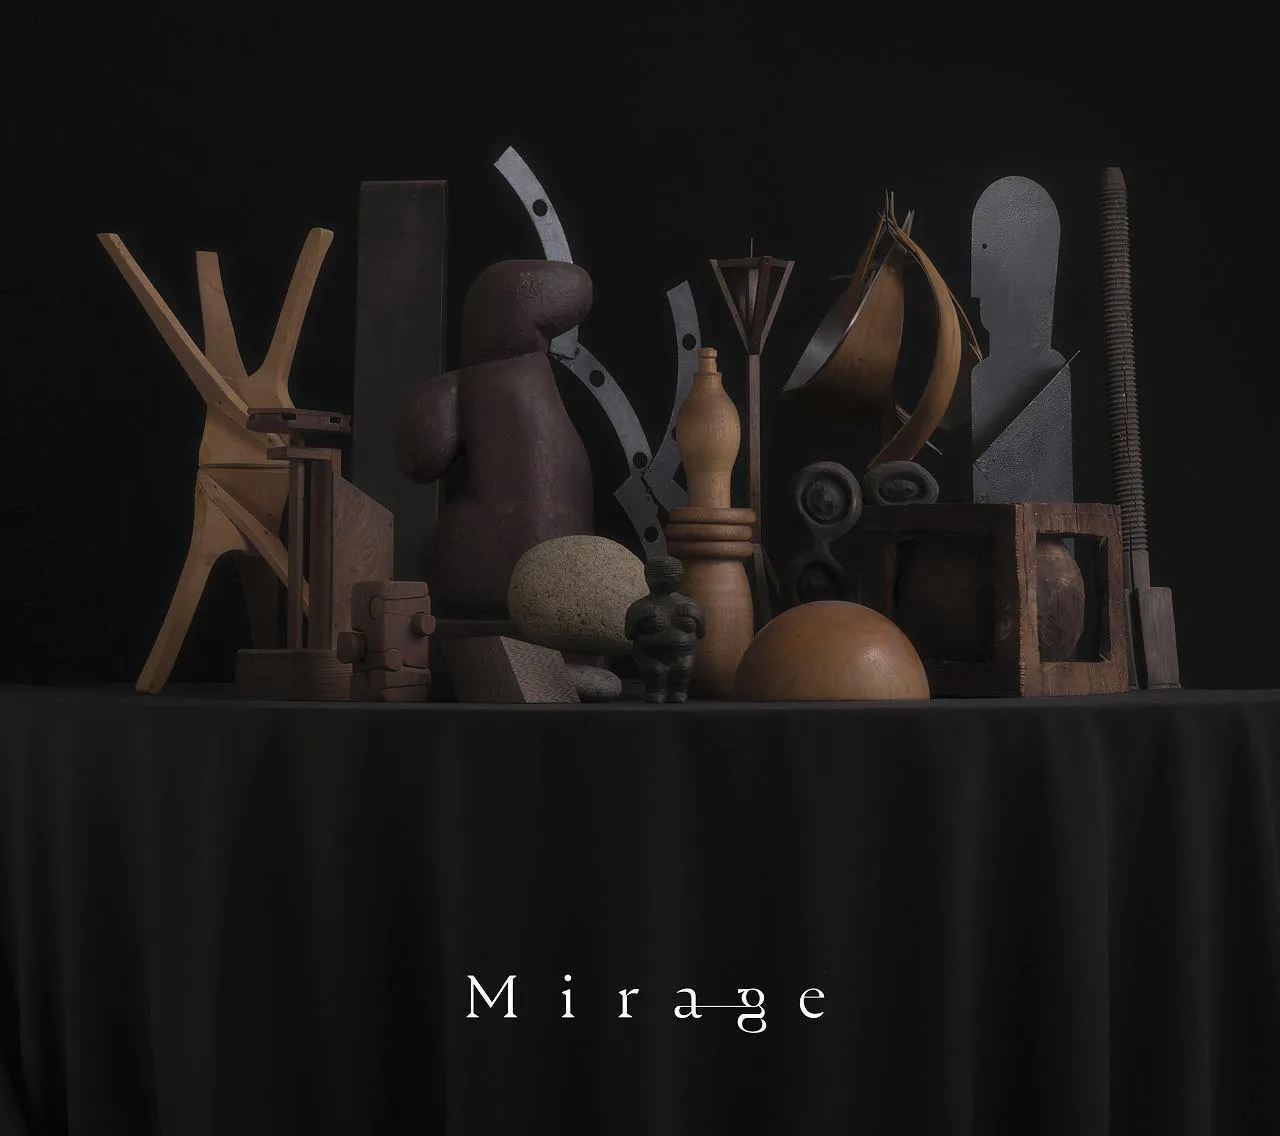 【写真】「Mirage」が収録される予定のアルバムジャケット